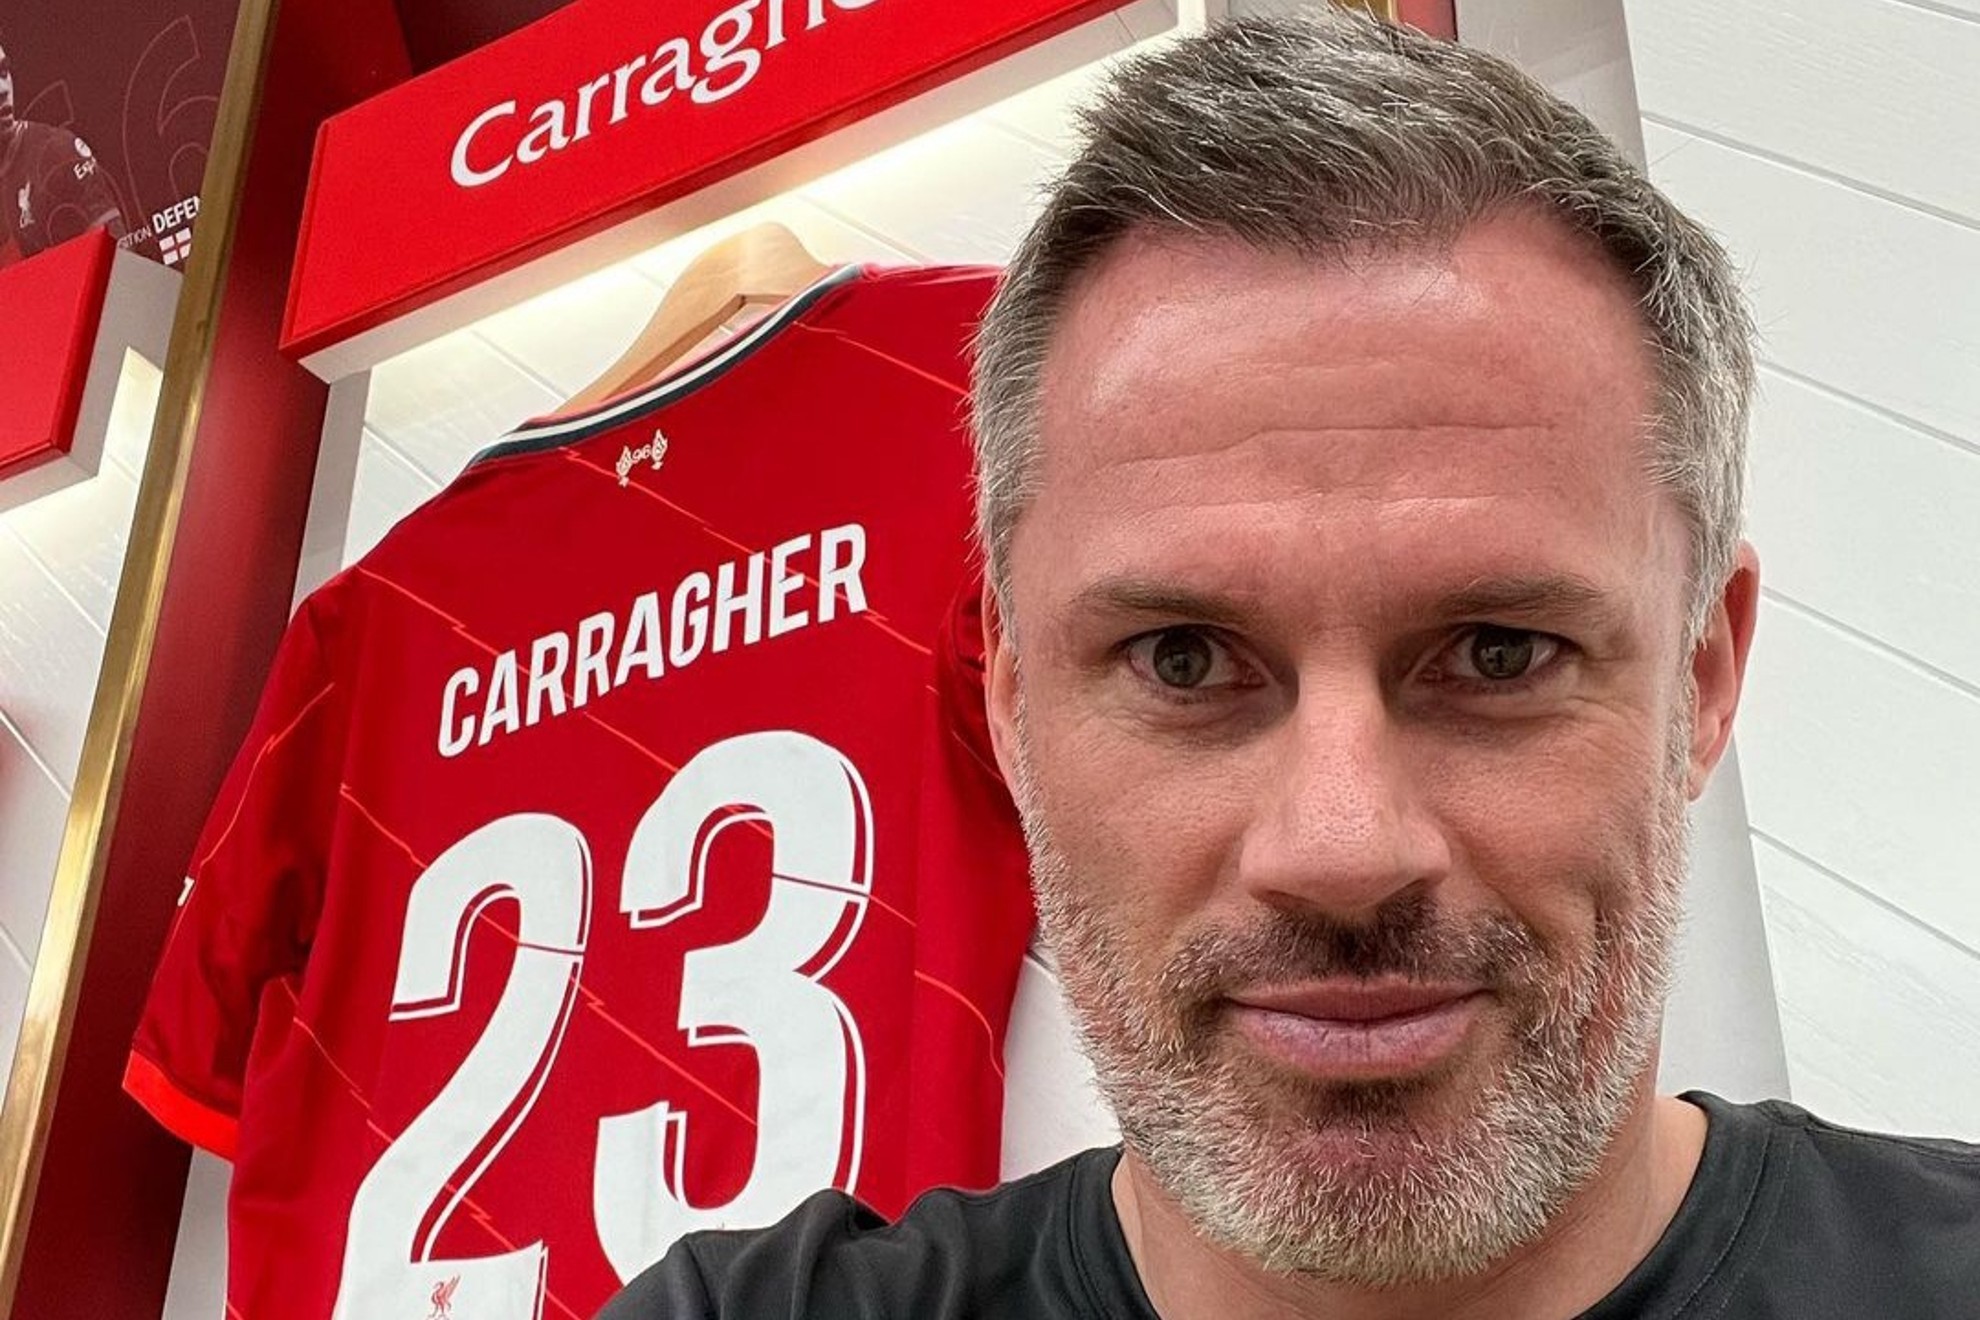 Jamie Carragher antes de disputar un partido de leyendas con el Liverpool | INSTAGRAM (23_carra)